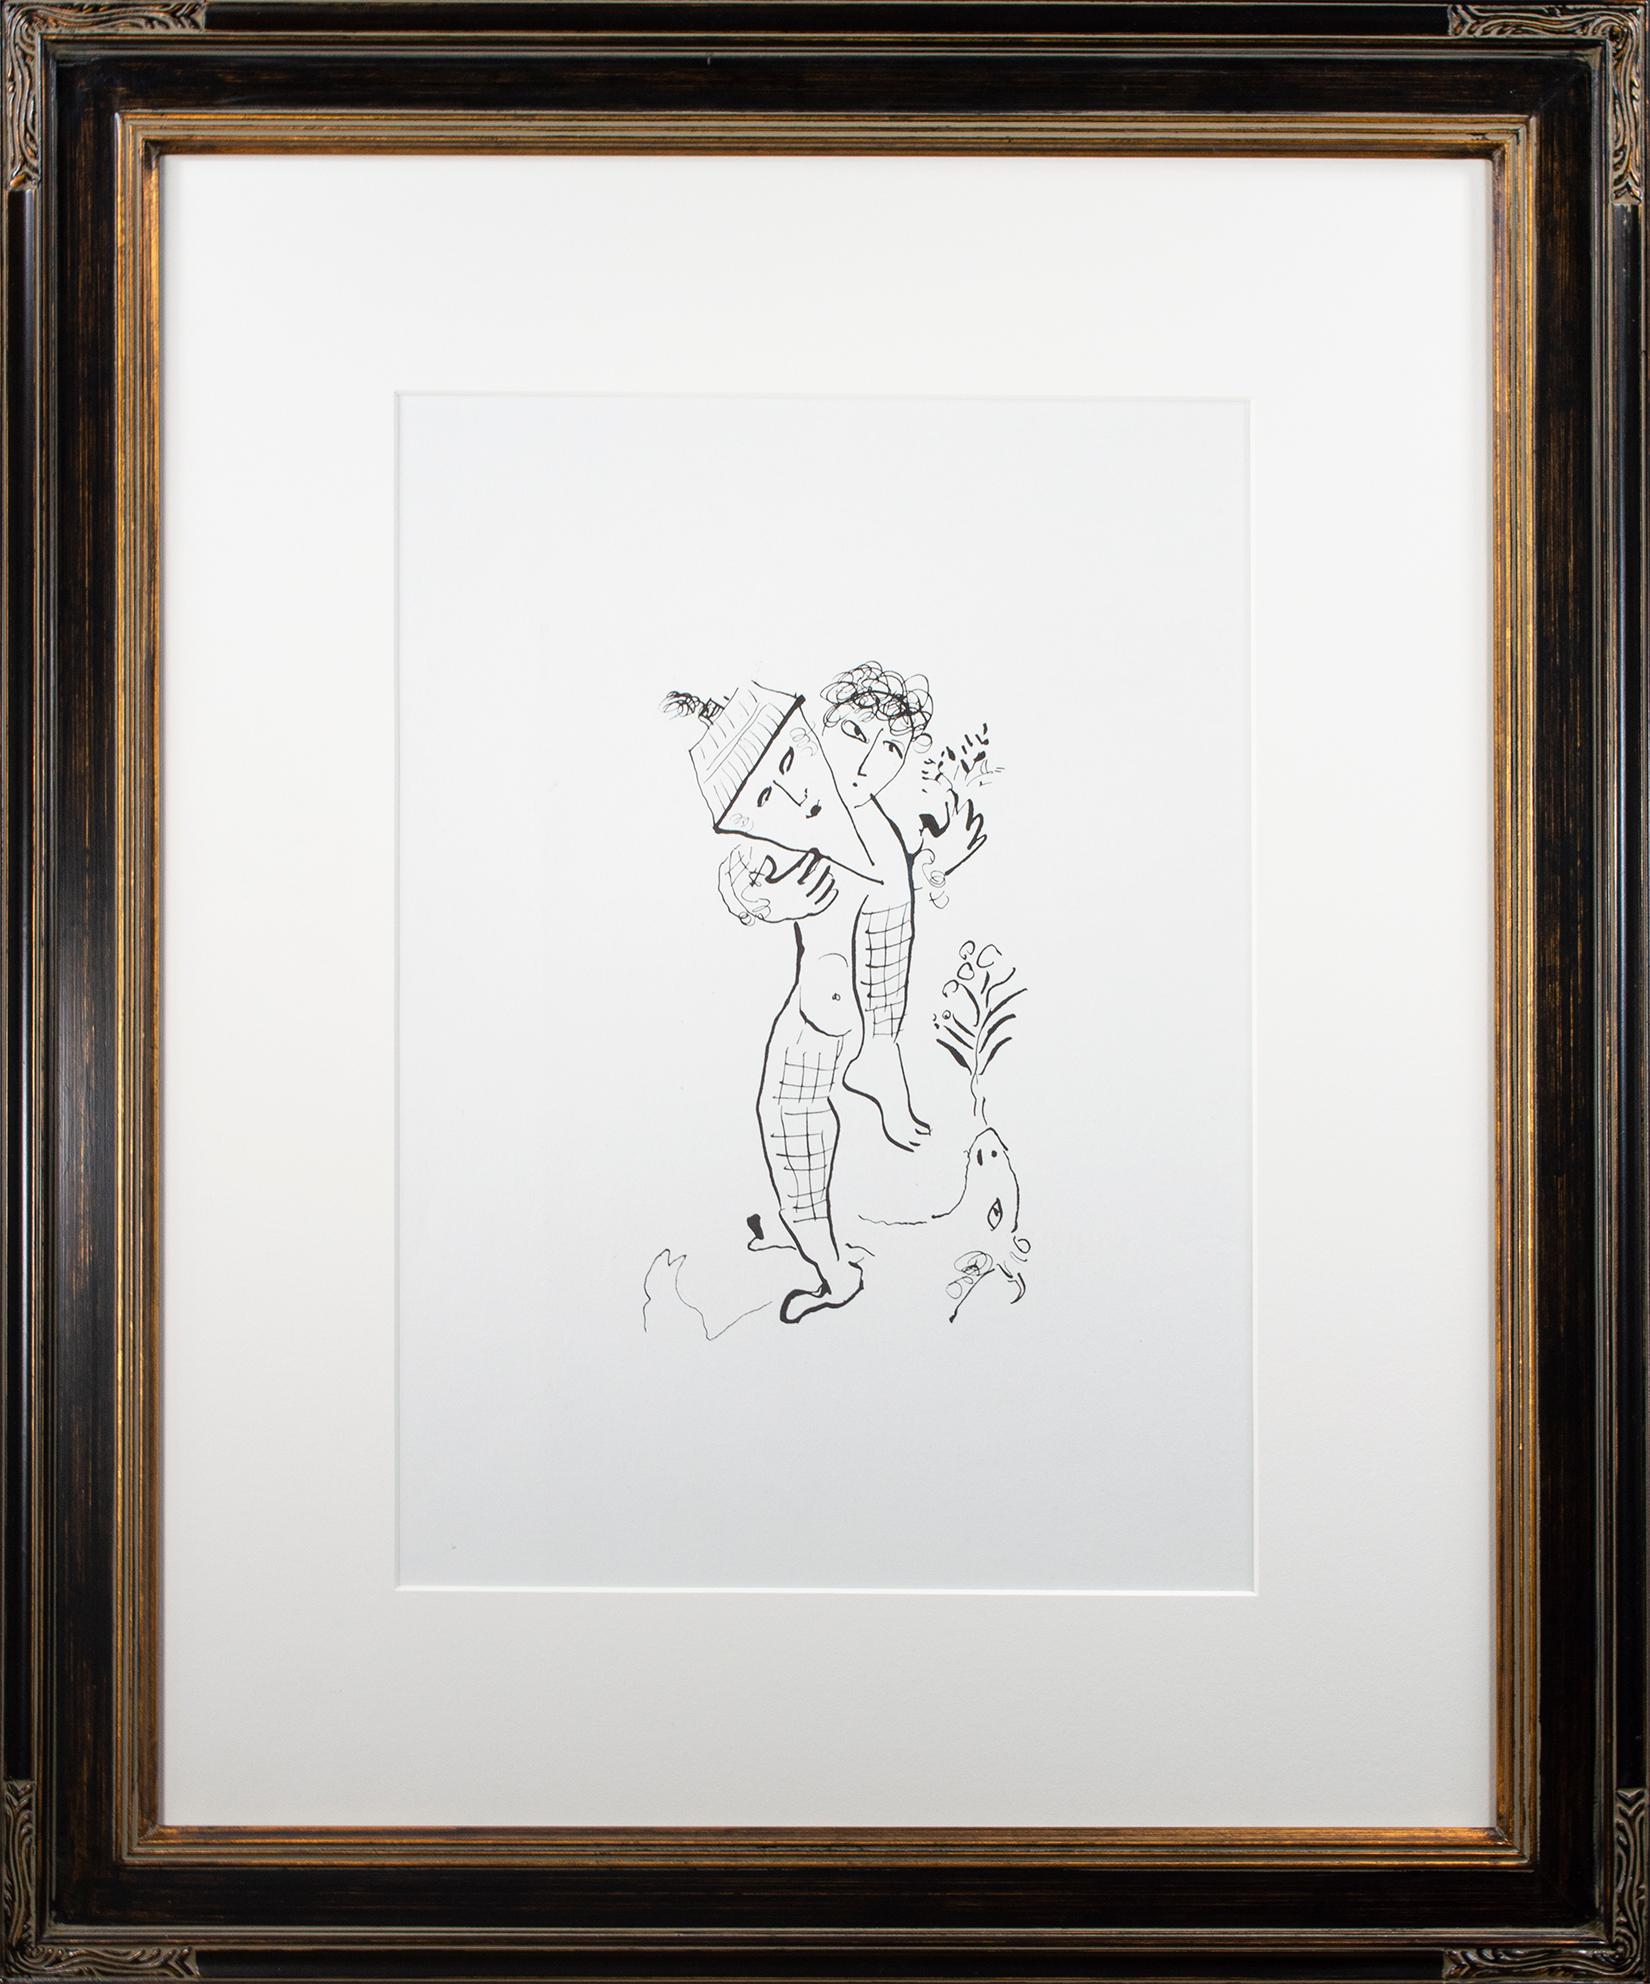 "Couverture arrière de Derrière le Miroir #235, M 946" est une lithographie originale de Marc Chagall.  Ce Chagall est une pièce graphique, avec des lignes noires sur un papier blanc. Le personnage principal est un bouffon aux cheveux bouclés, avec